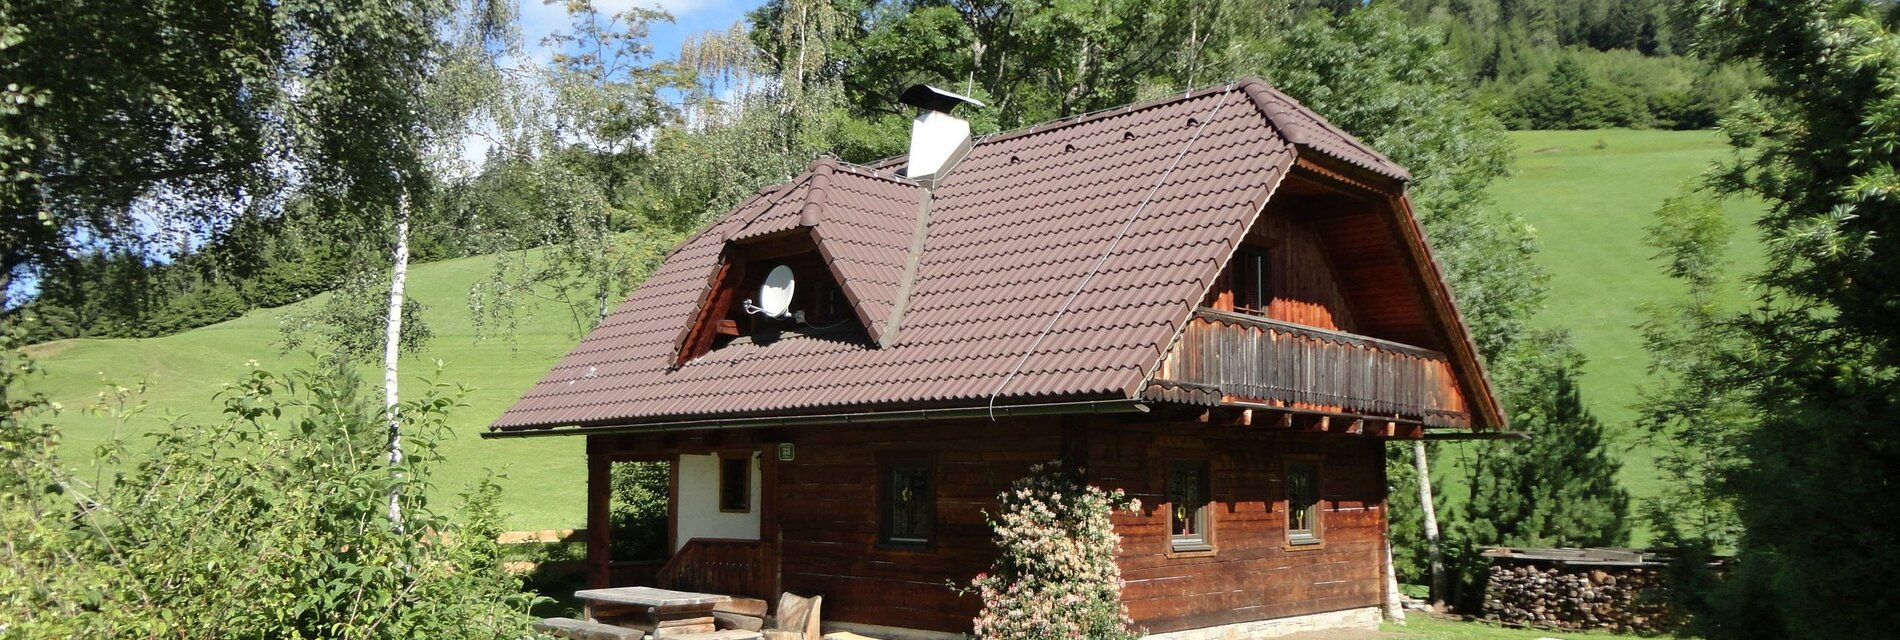 Petzl Hütte